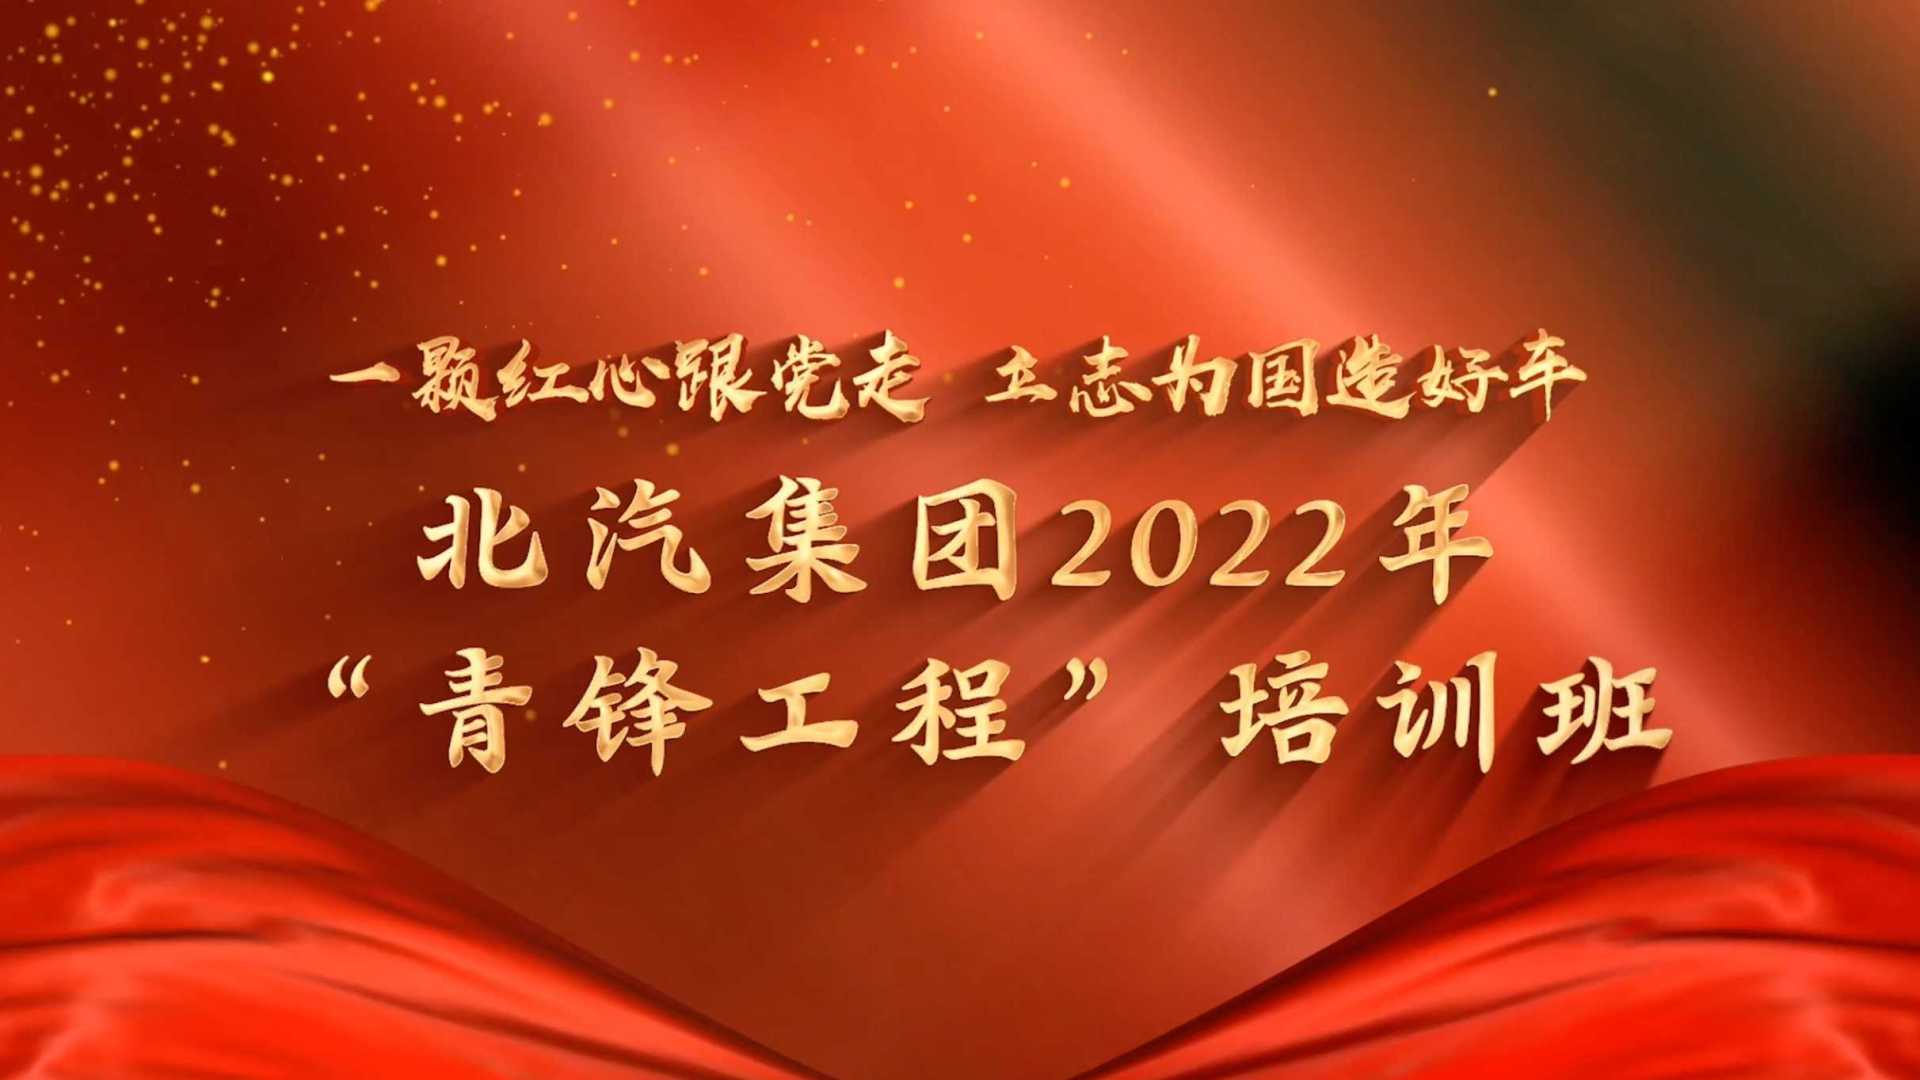 2022年“青锋工程”培训班结业视频